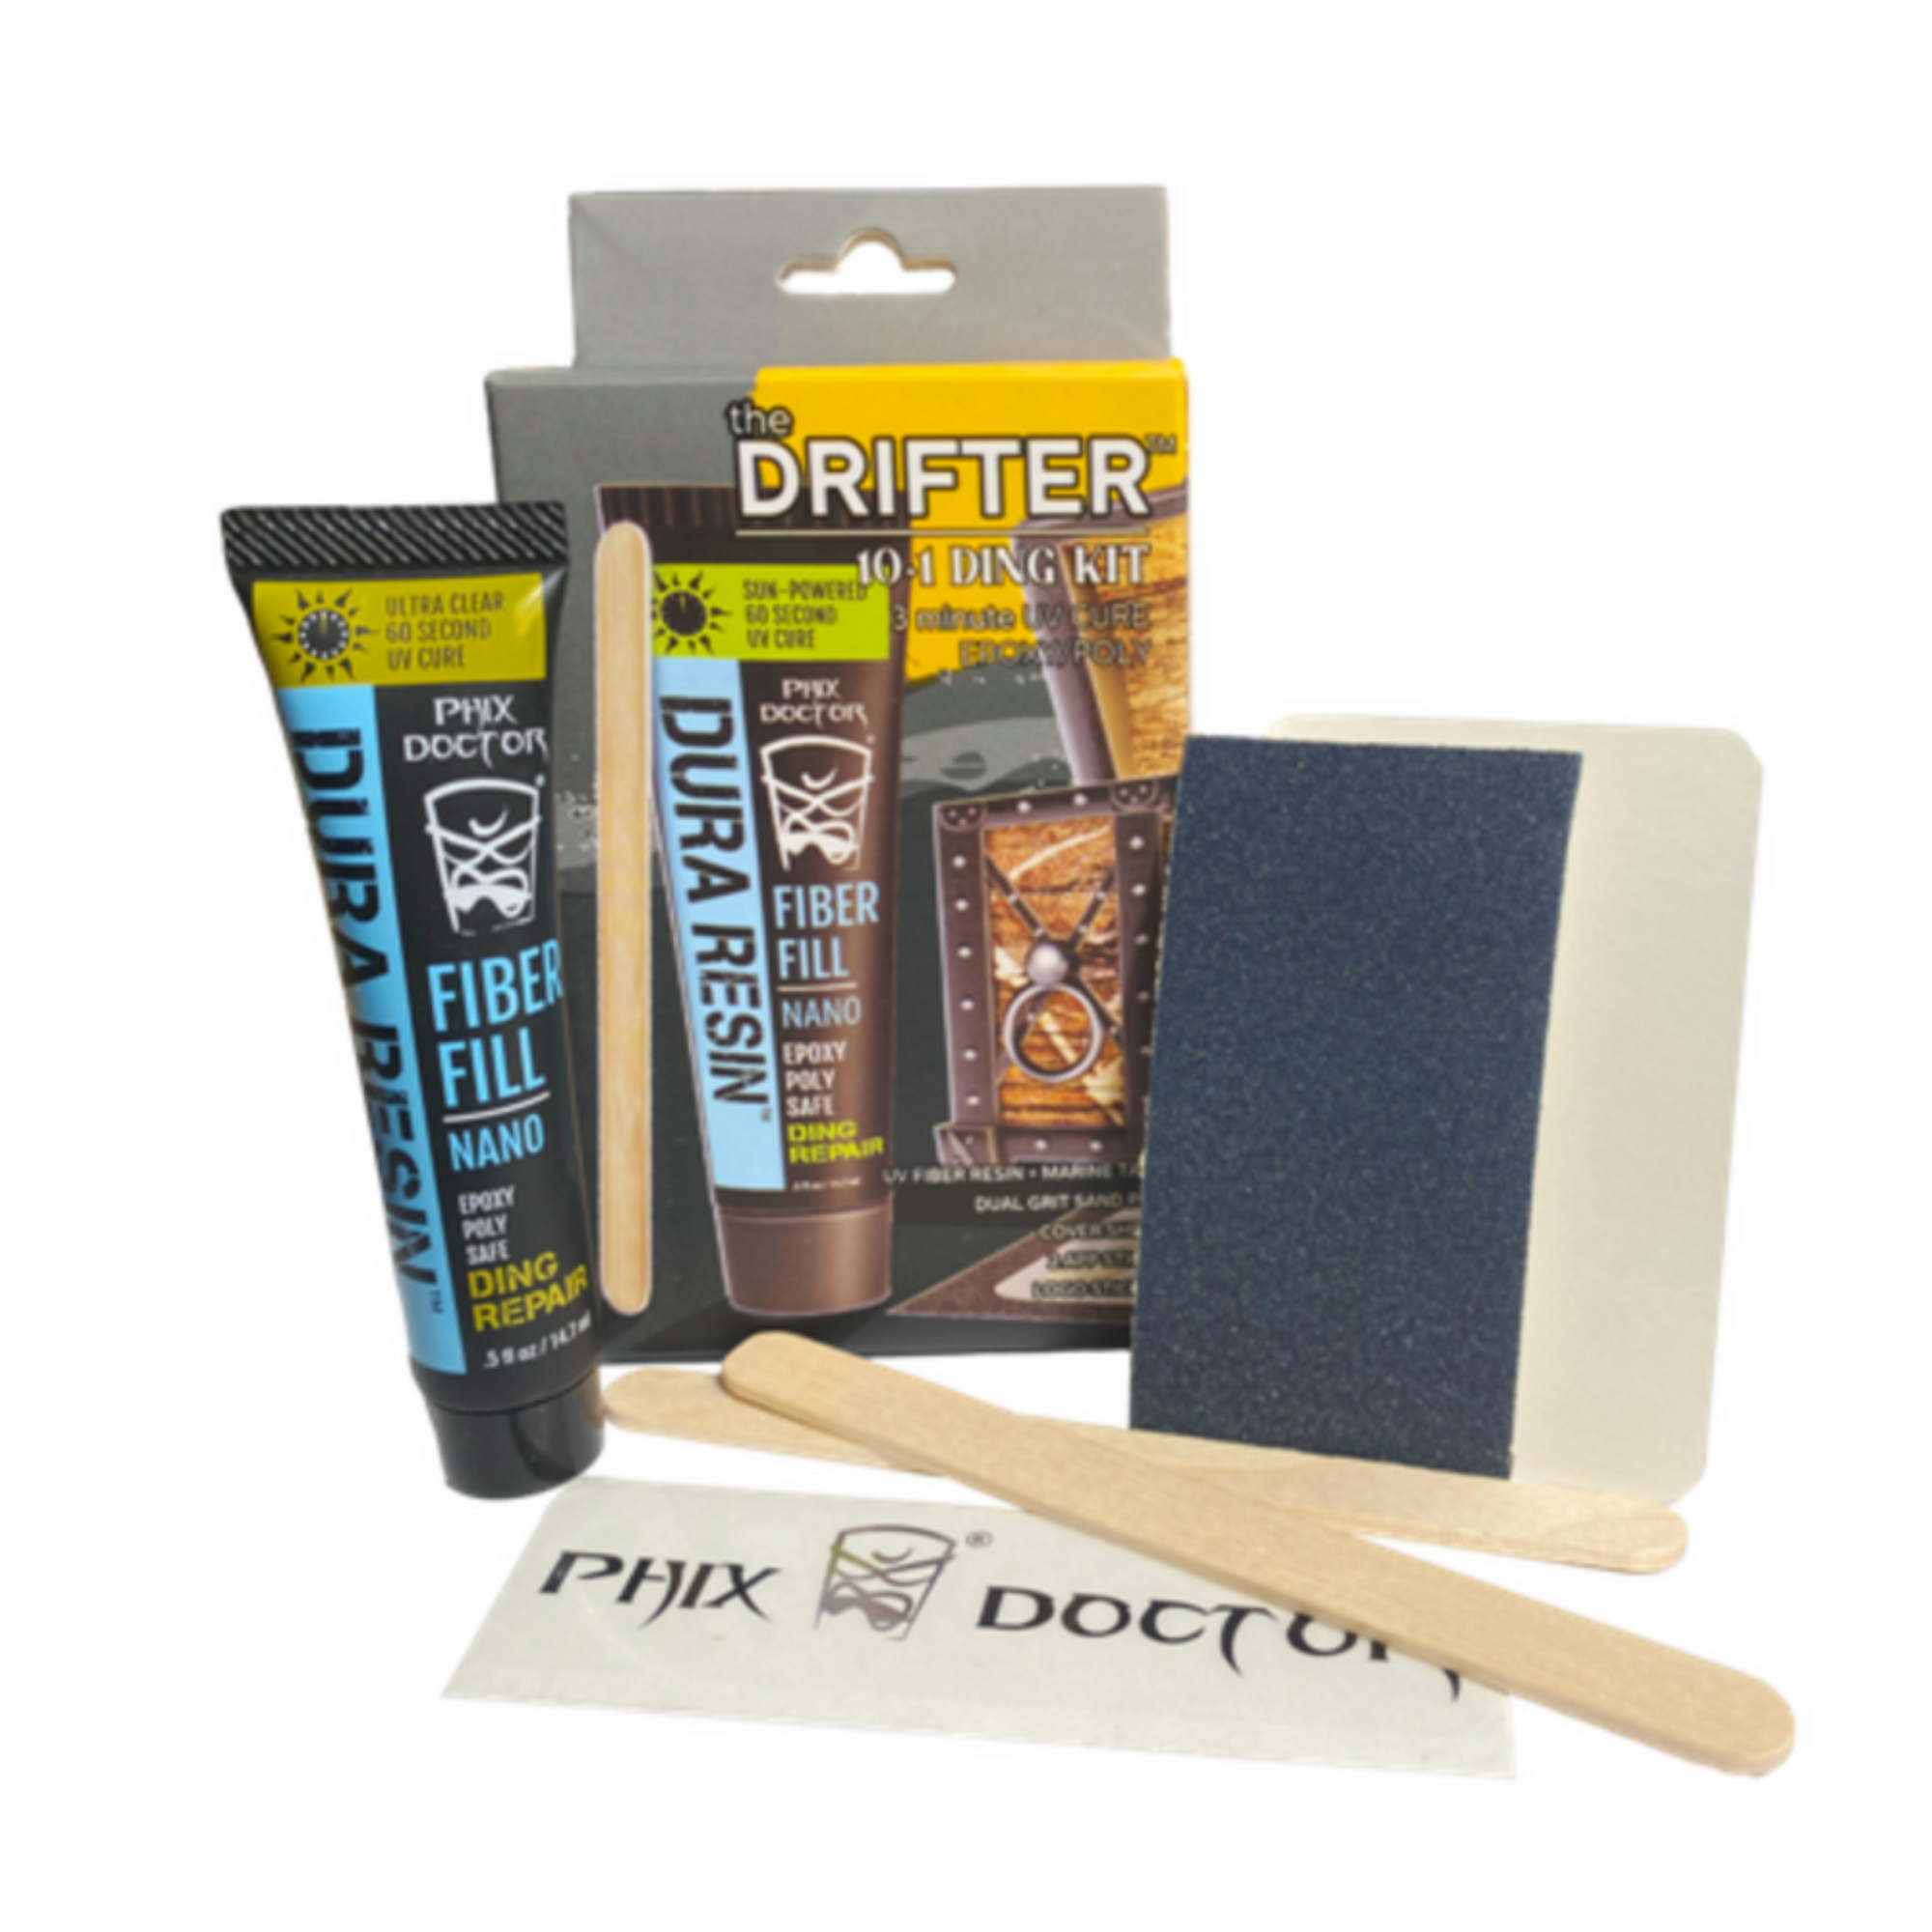 Phix Doctor Drifter Travel Kit